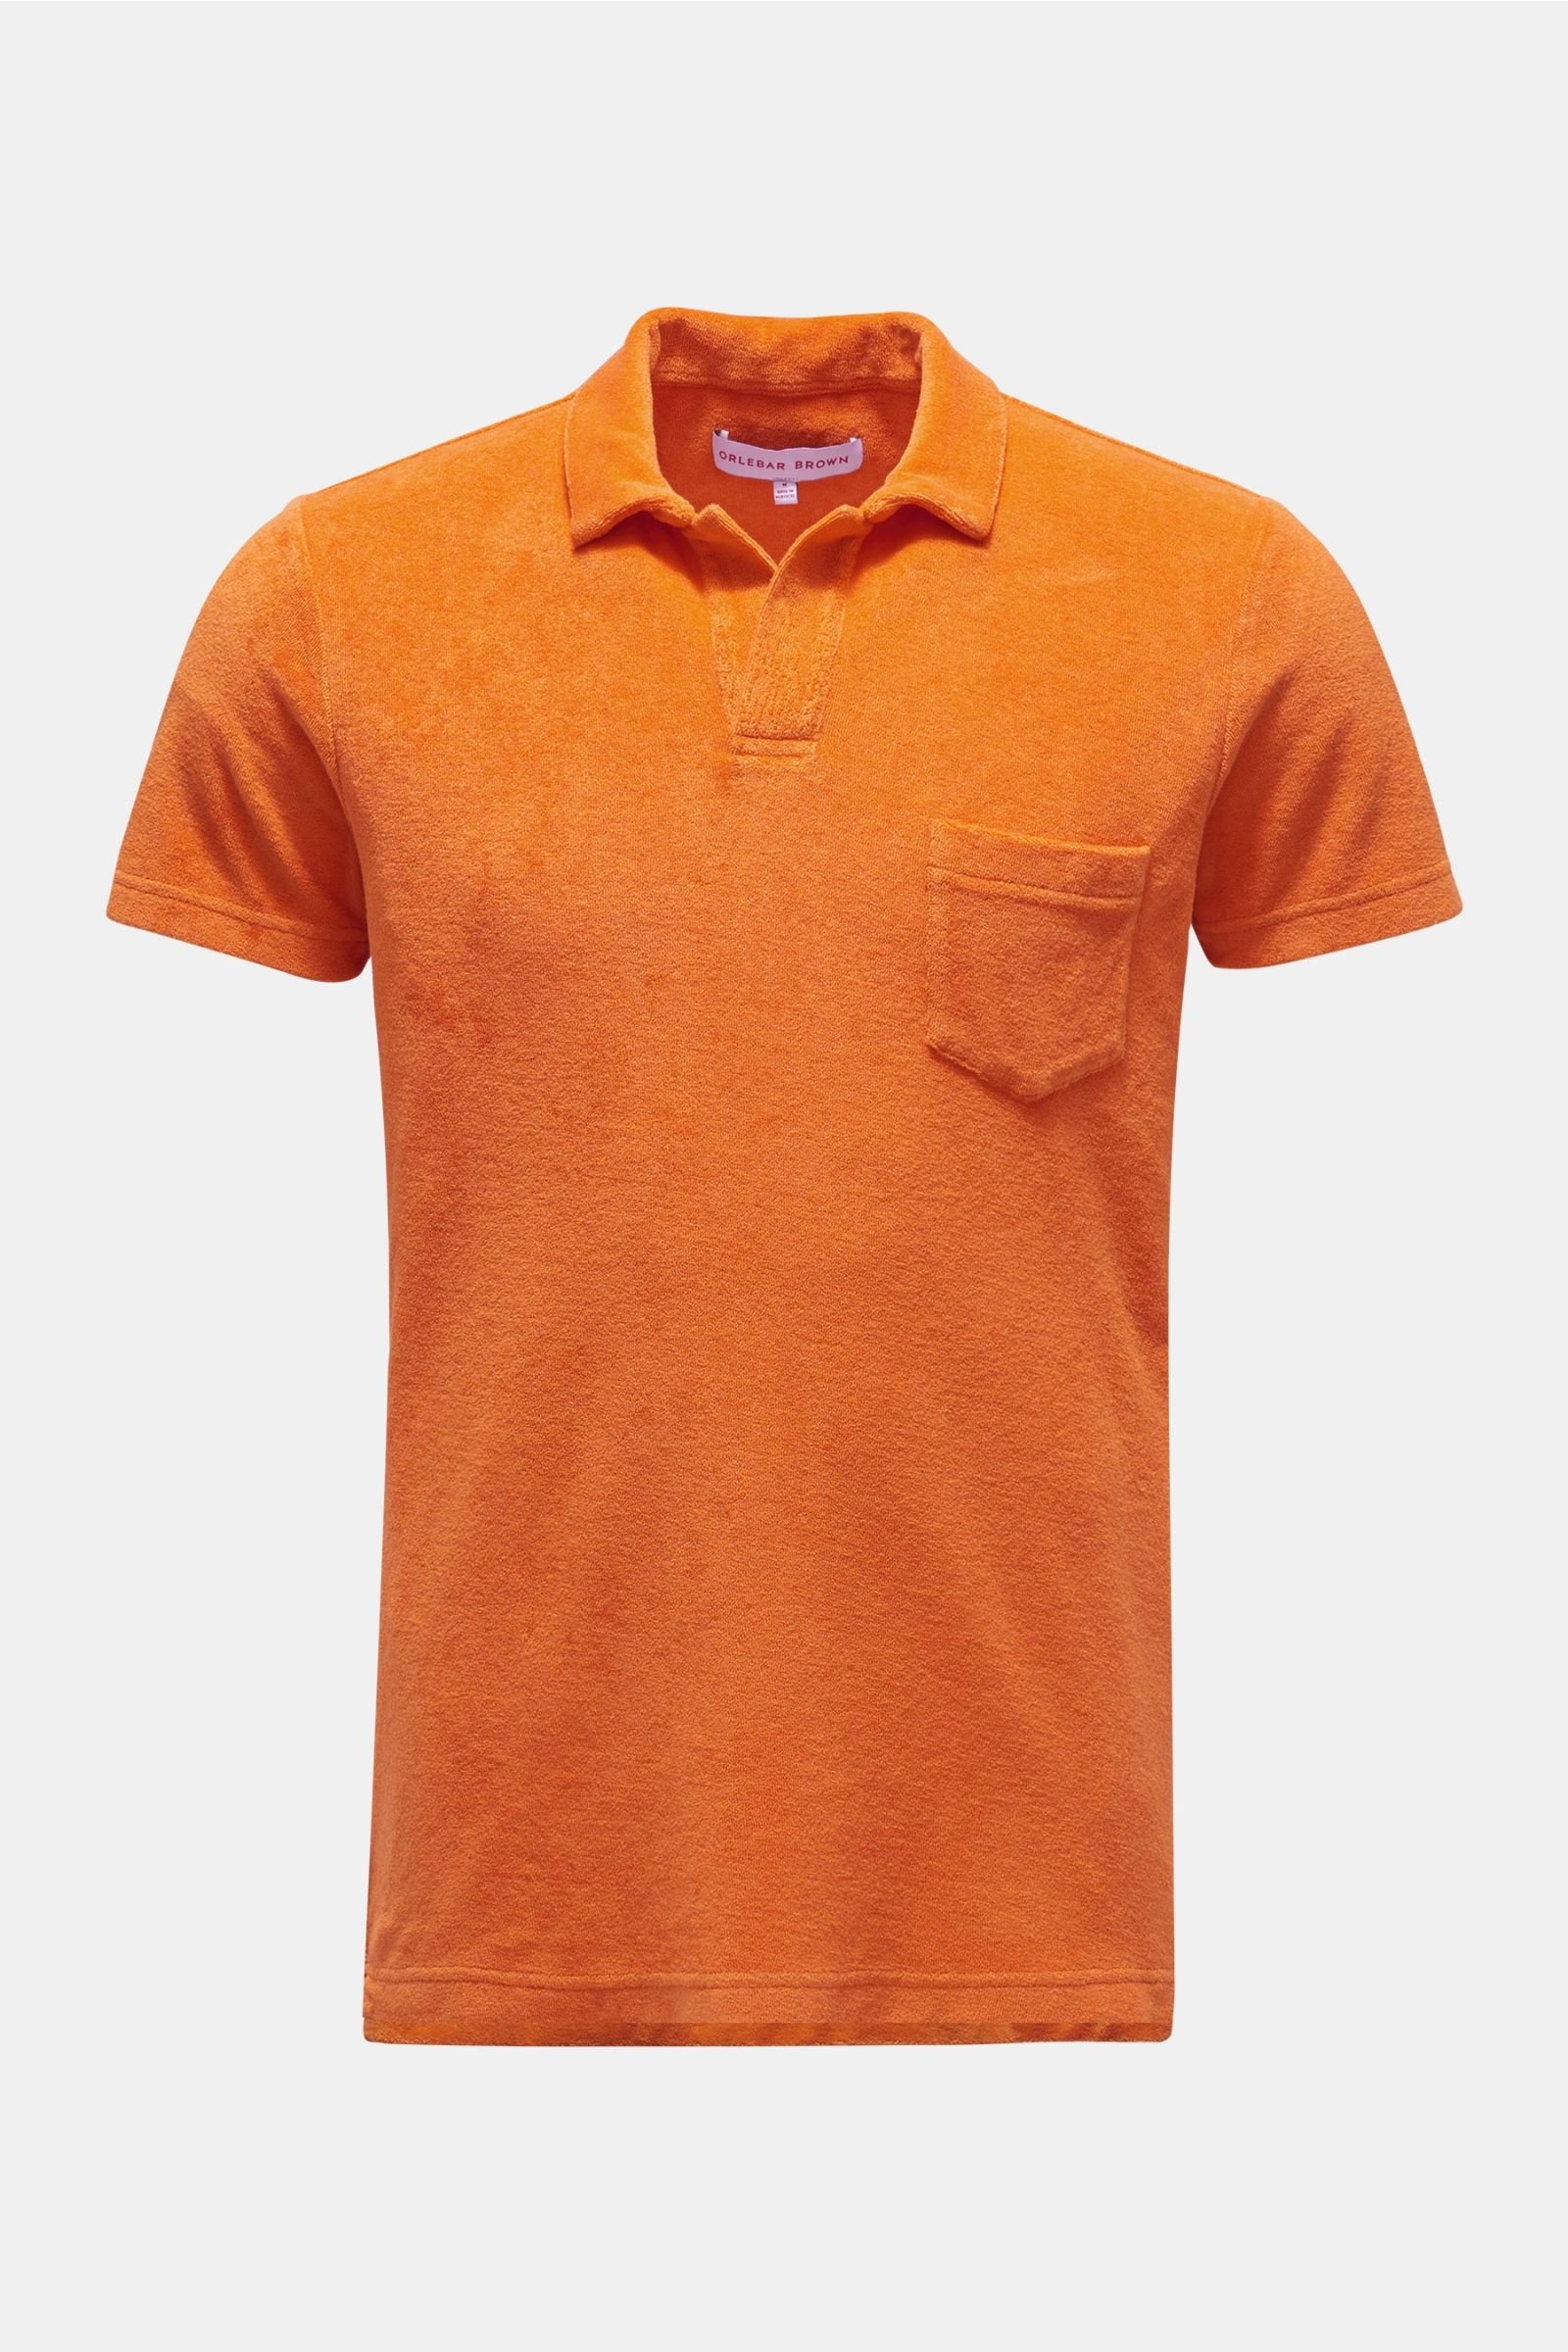 Terry polo shirt 'Terry' orange